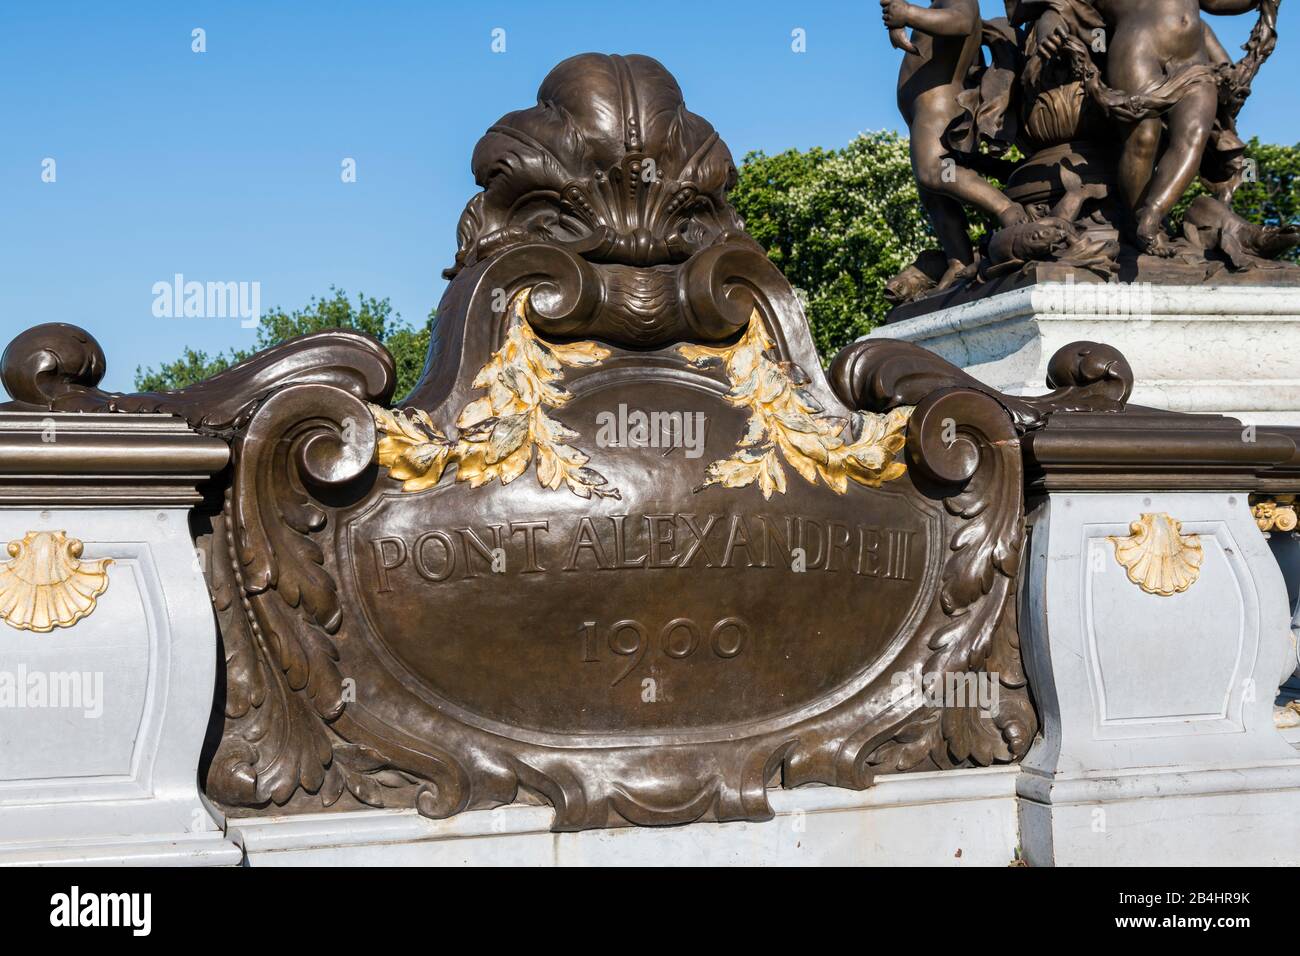 Kupferplatte am Geländer mit der Aufschrift 1897 Pont Alexandre III 1900, Paris, Frankreich, Europa Banque D'Images